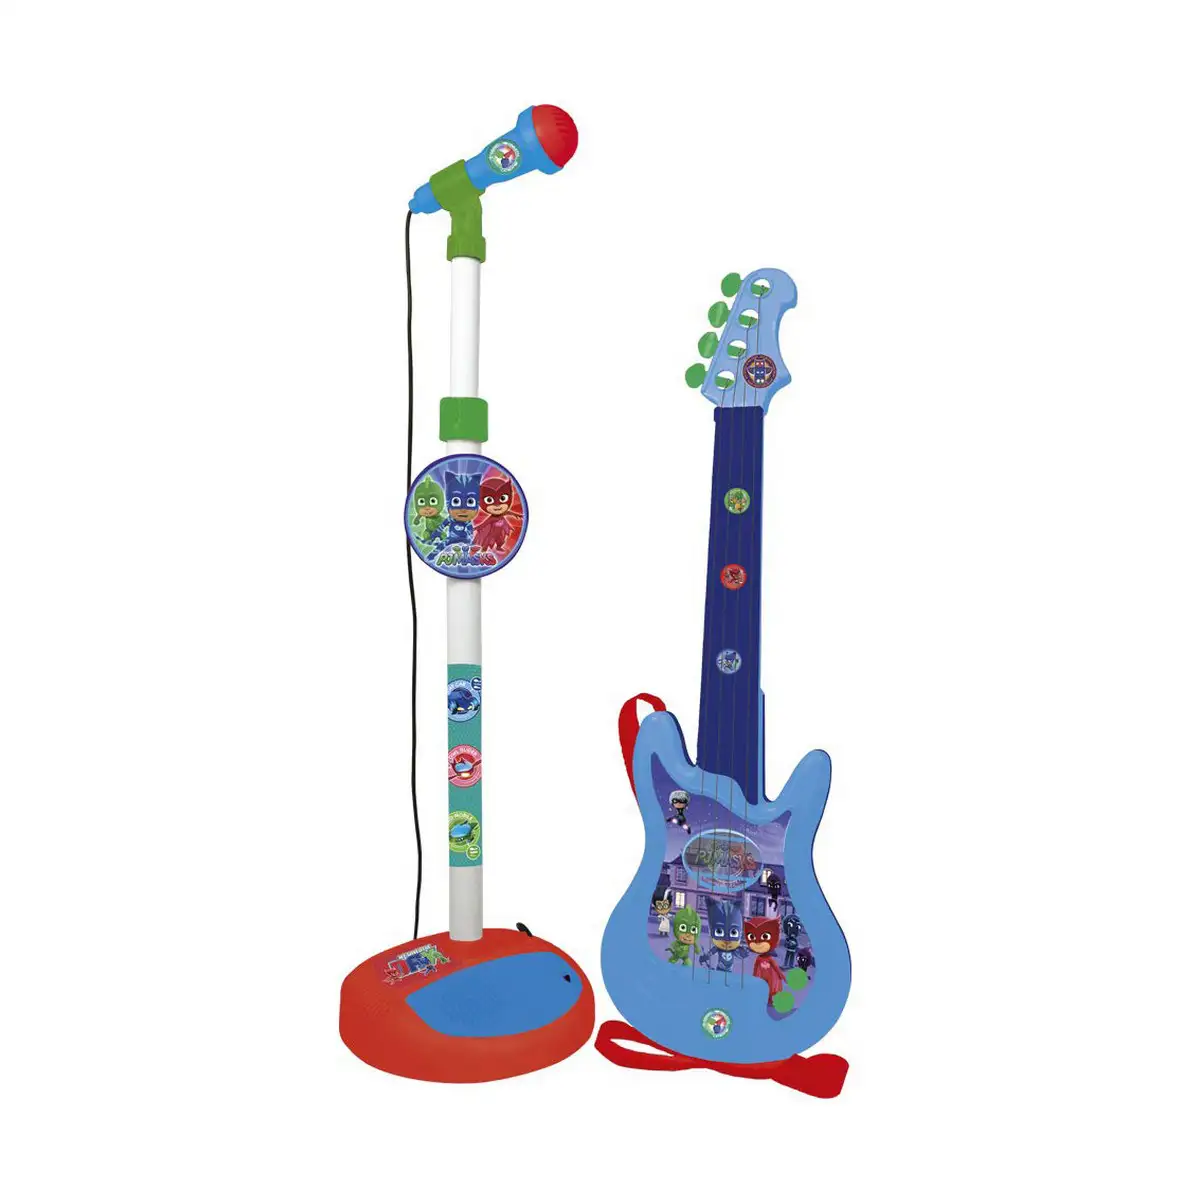 Guitare pour enfant pj masks microphone bleu_8619. DIAYTAR SENEGAL - Là où l'Élégance Devient un Mode de Vie. Naviguez à travers notre gamme et choisissez des produits qui apportent une touche raffinée à votre quotidien.